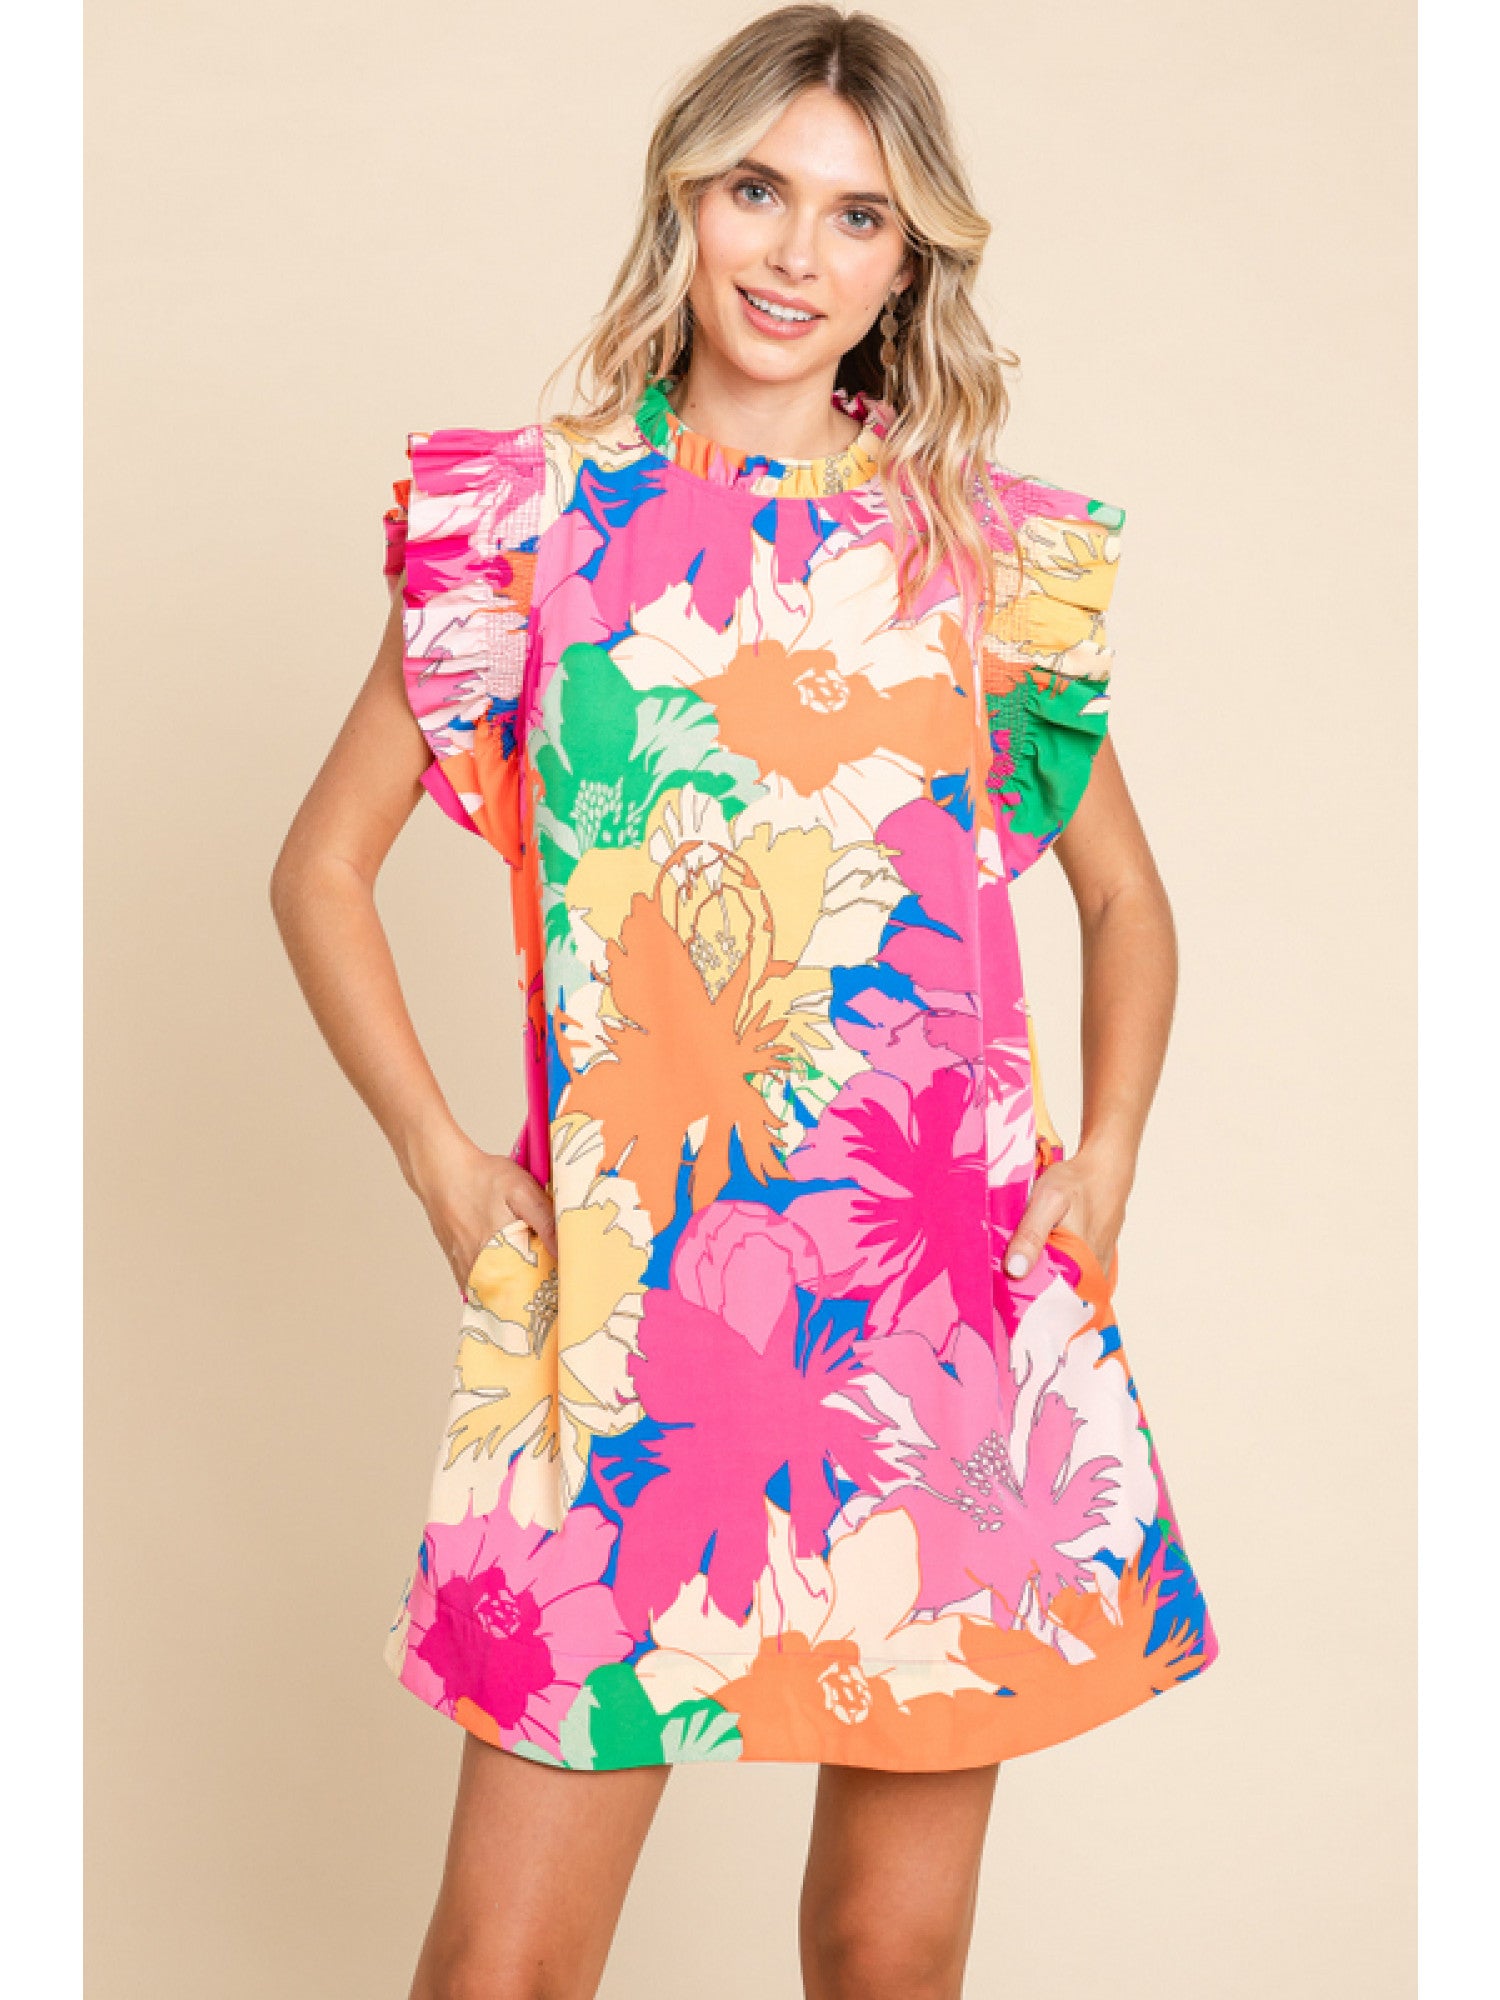 Flower Print Dress Hot Pink Mix